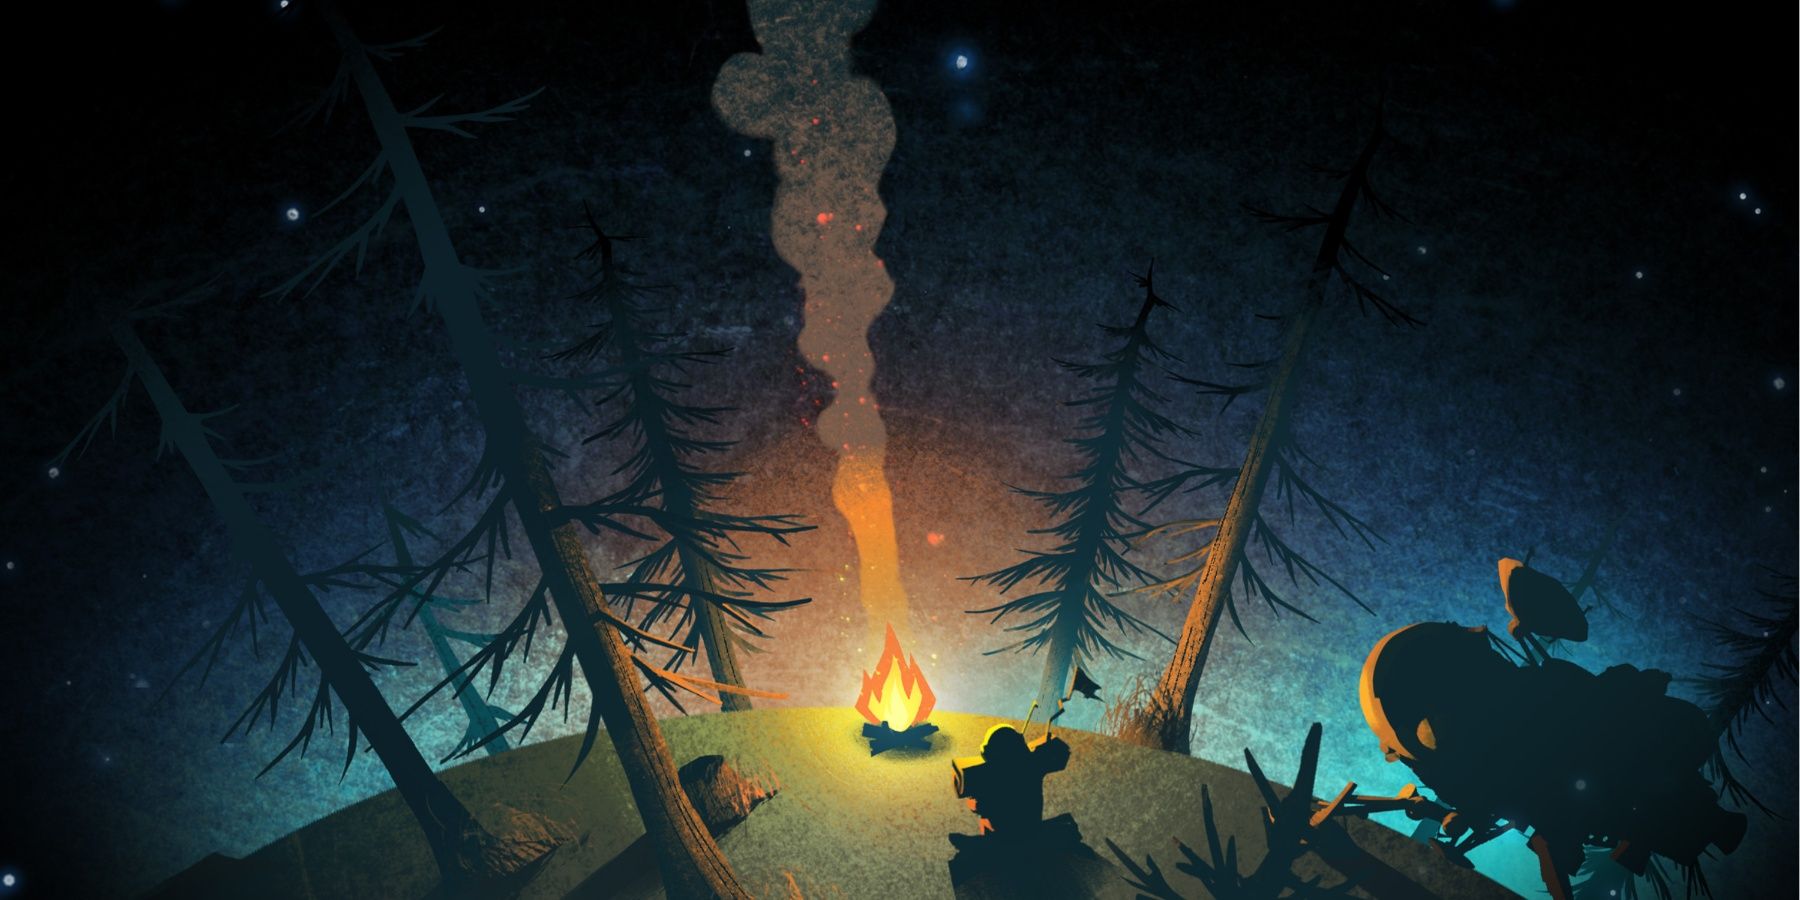 Ao fundo está um alienígena tocando um instrumento musical em frente a uma fogueira em forma de navio.  Algumas árvores os cercam.